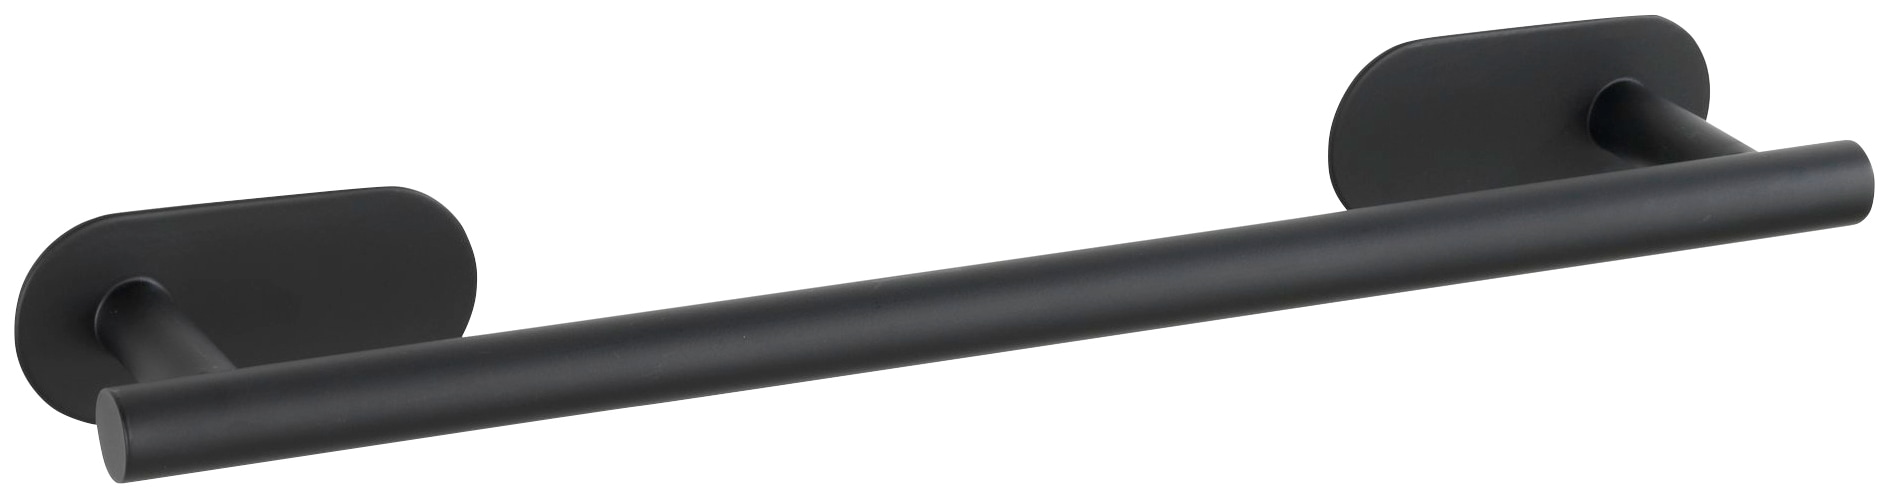 WENKO Handtuchhalter "Orea Black", BxTxH: 40x7x4,5 cm, befestigen ohne bohren